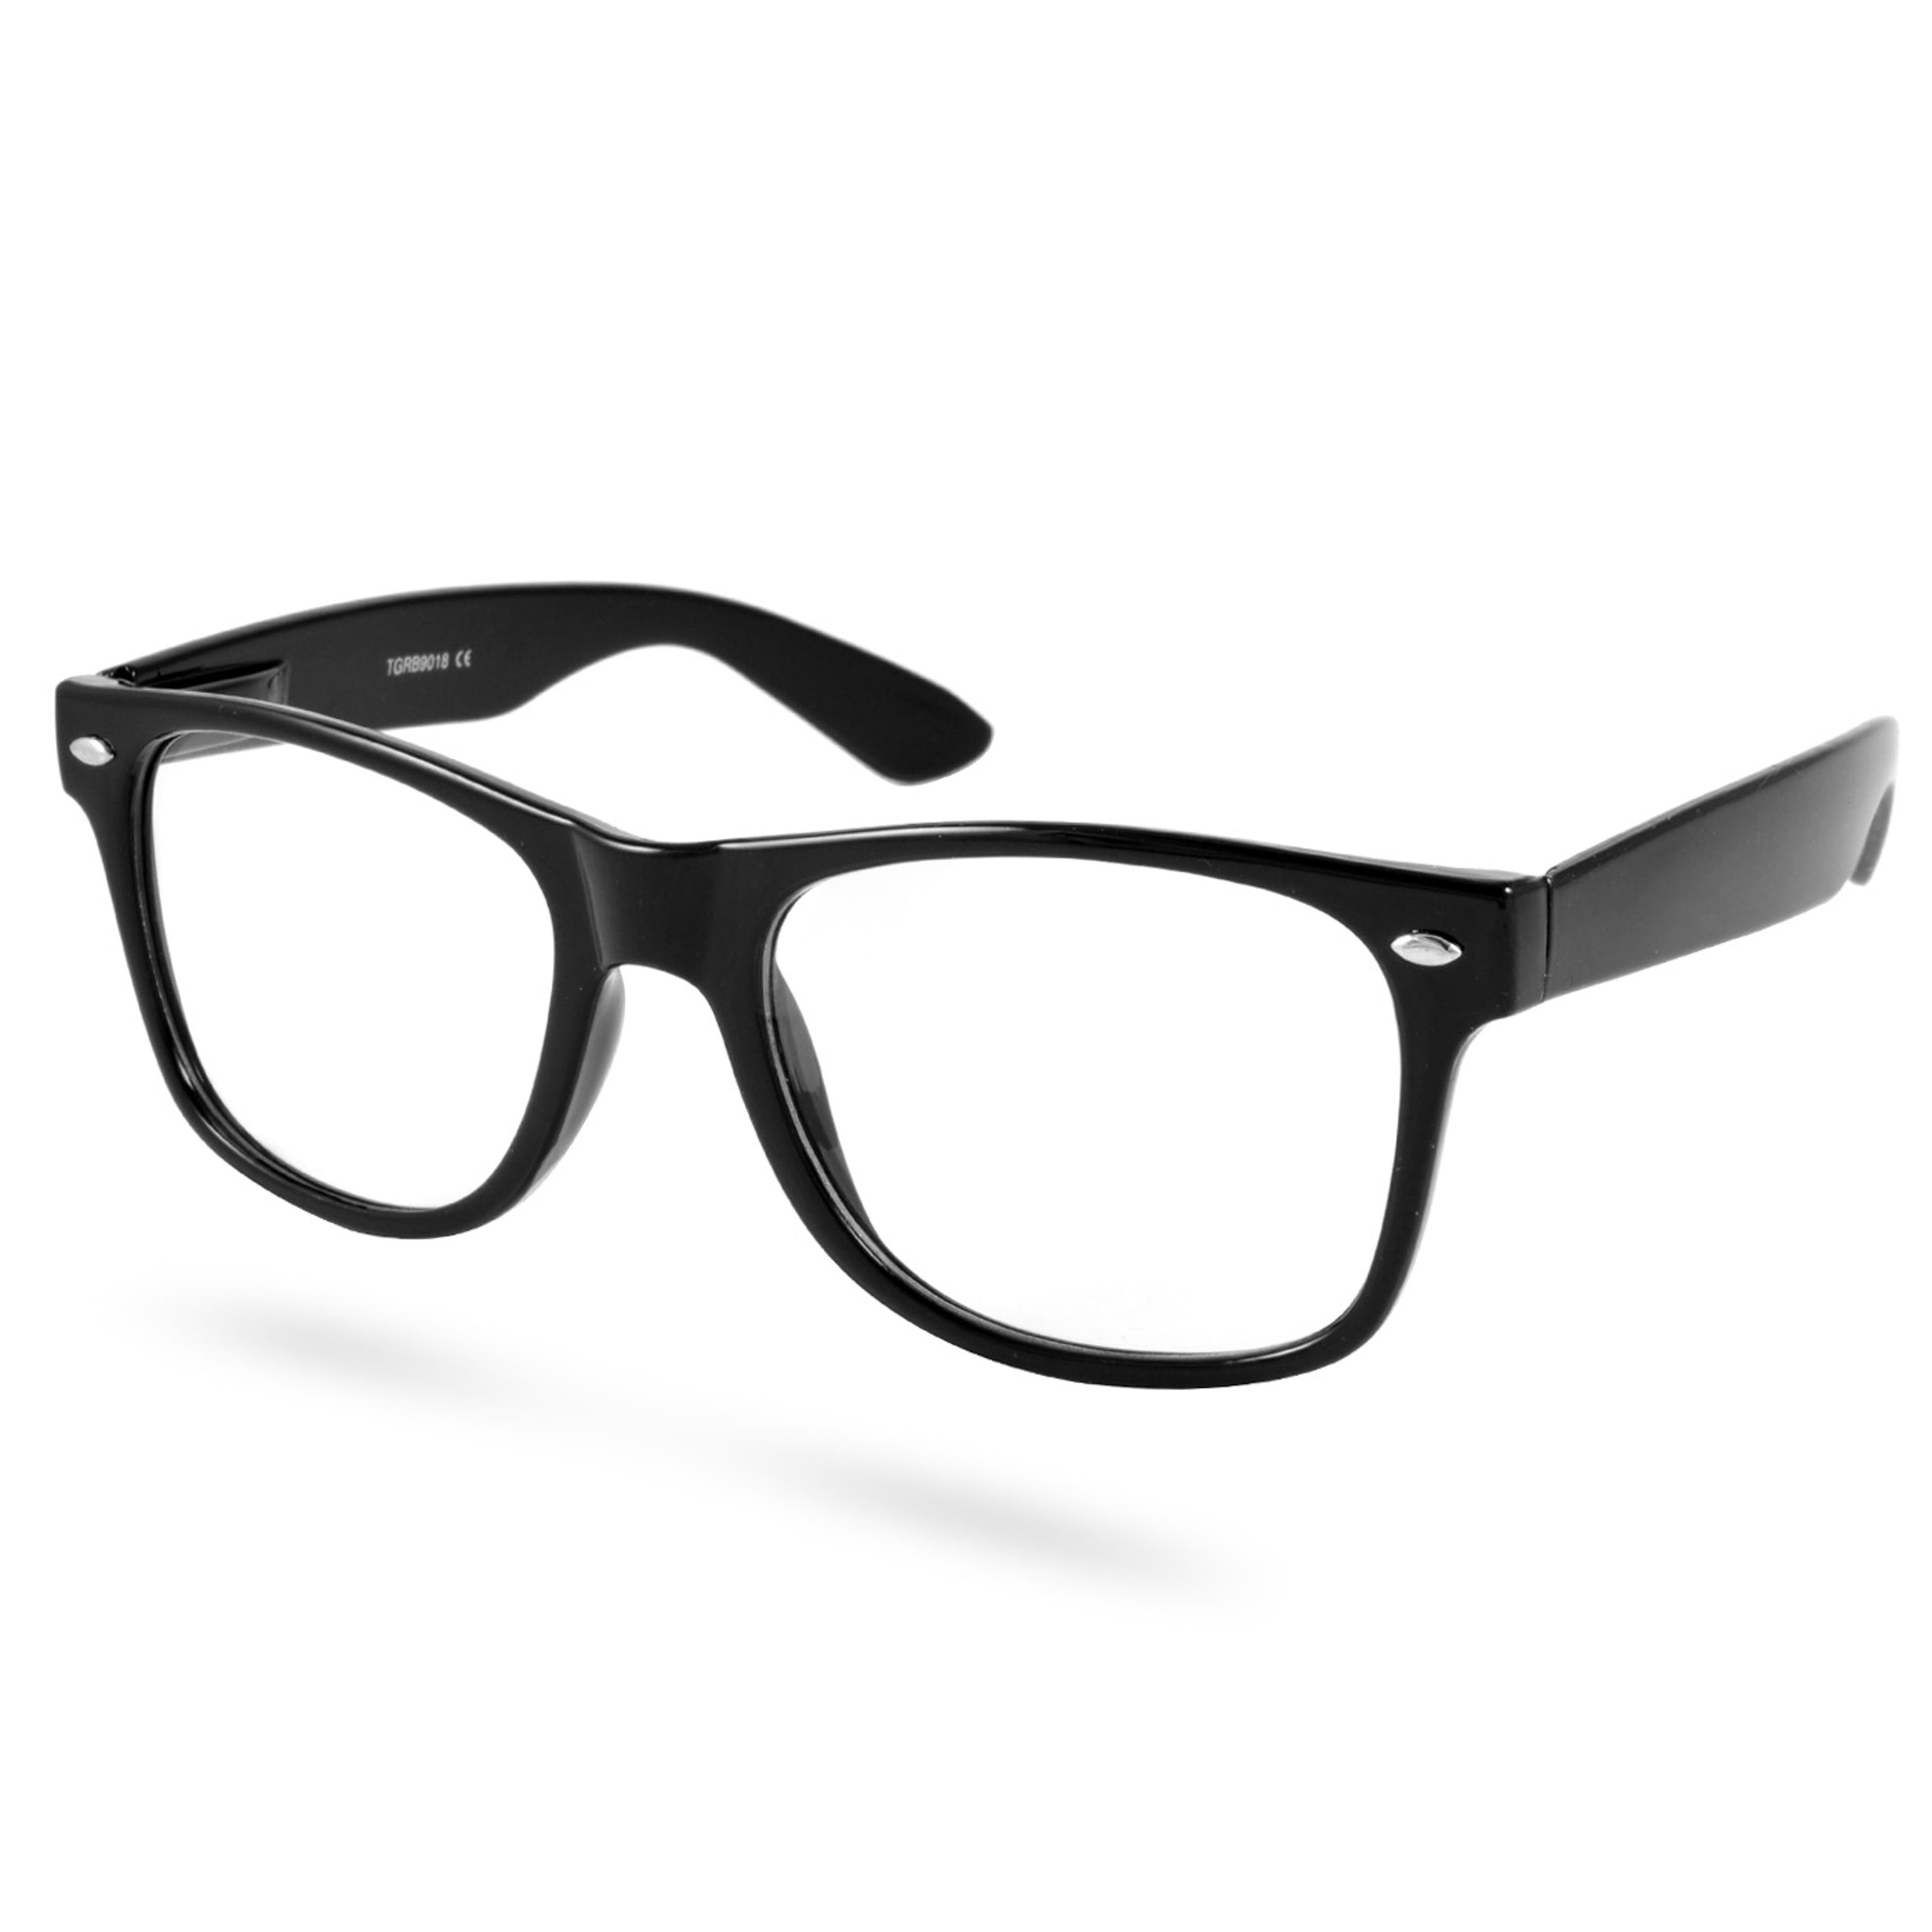 Mustat retrohenkiset silmälasit ilman vahvuuksia